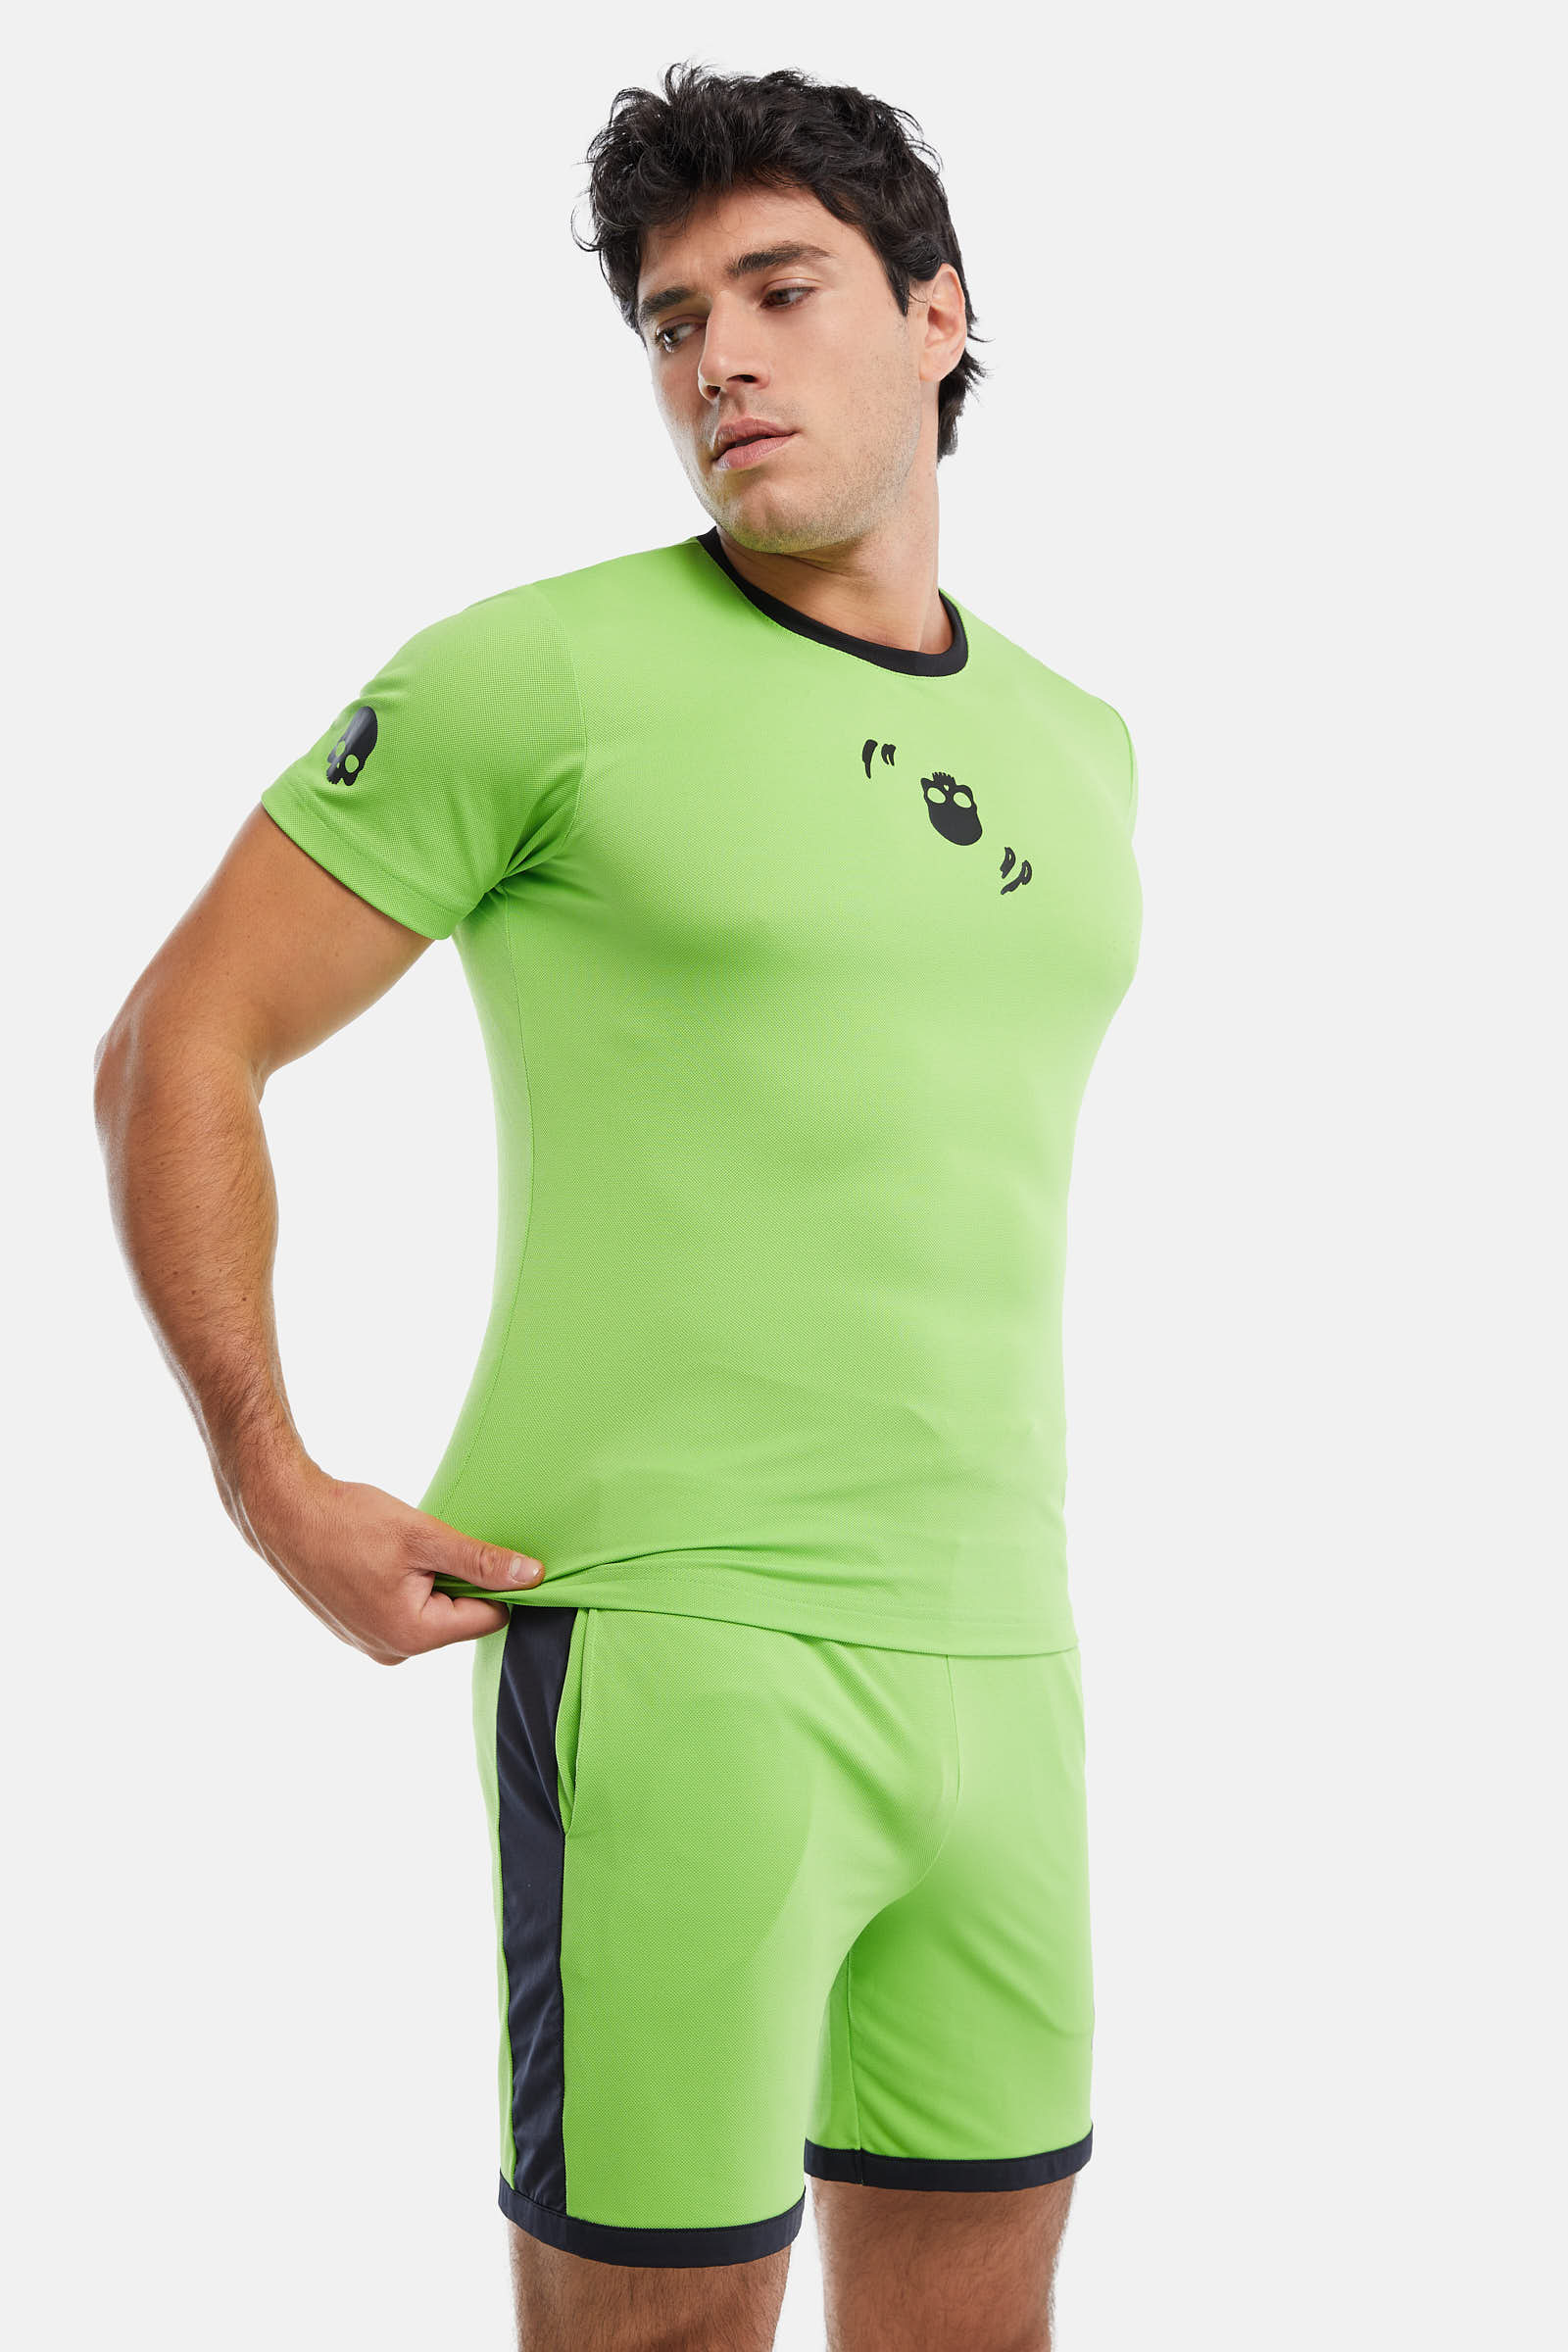 CRAZY RACKET TECH T-SHIRT - GREEN - Hydrogen - Luxury Sportwear